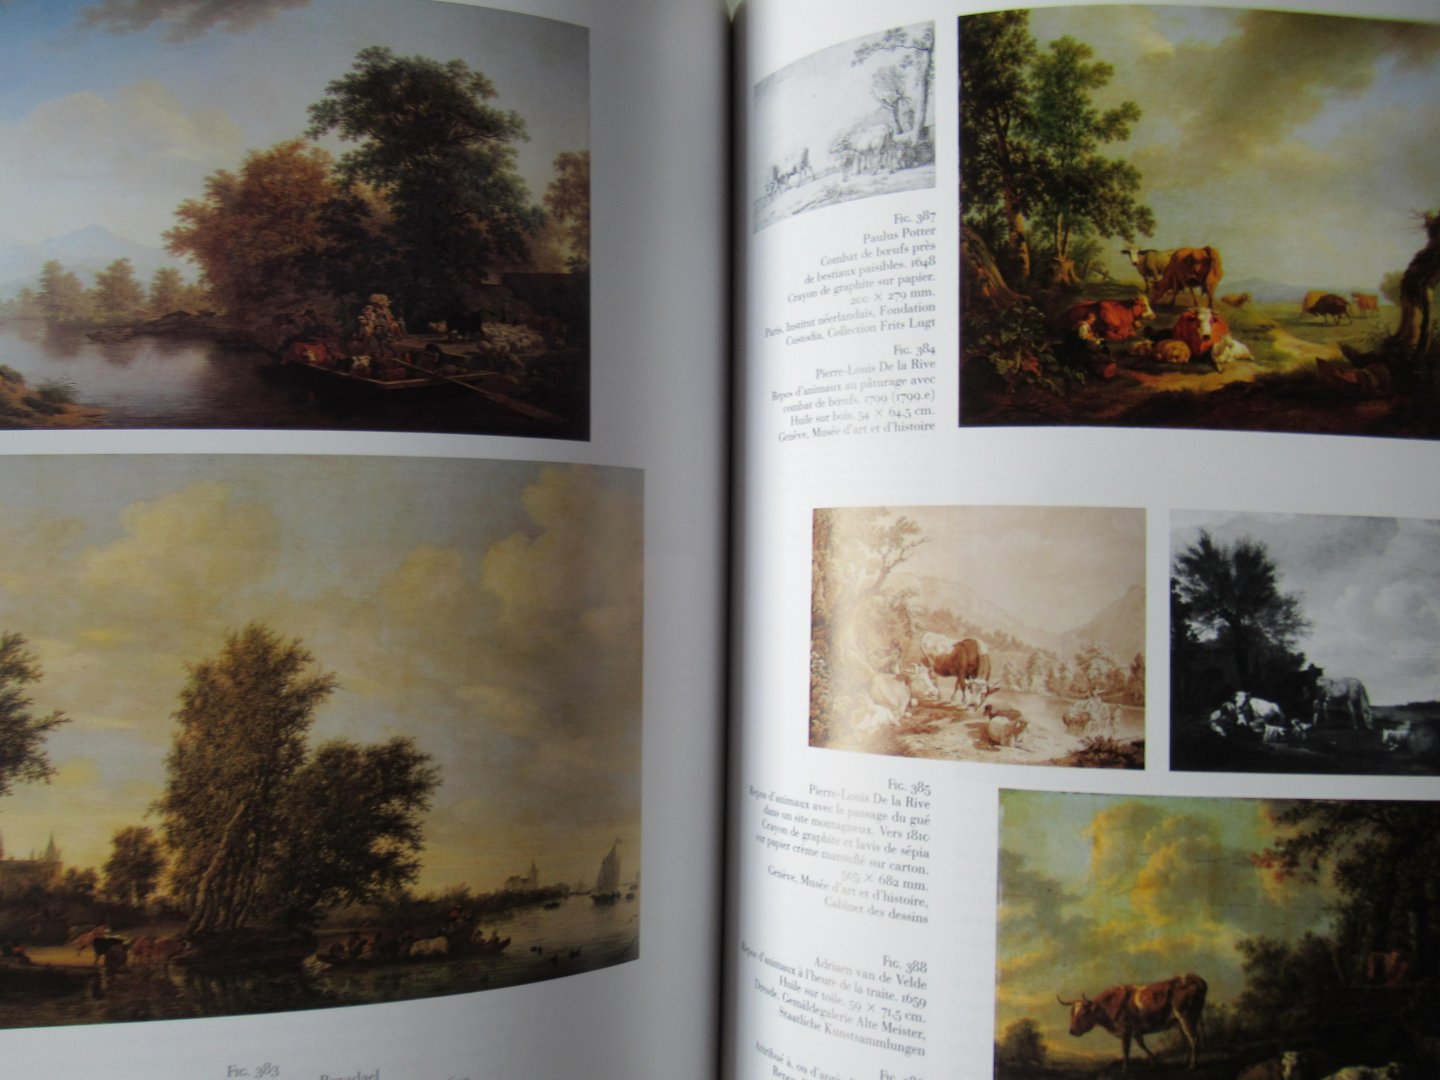 Gueretta, Patrick André - Pierre Louis De la Rive ou la belle nature: Vie et oeuvre peint (1753-1817